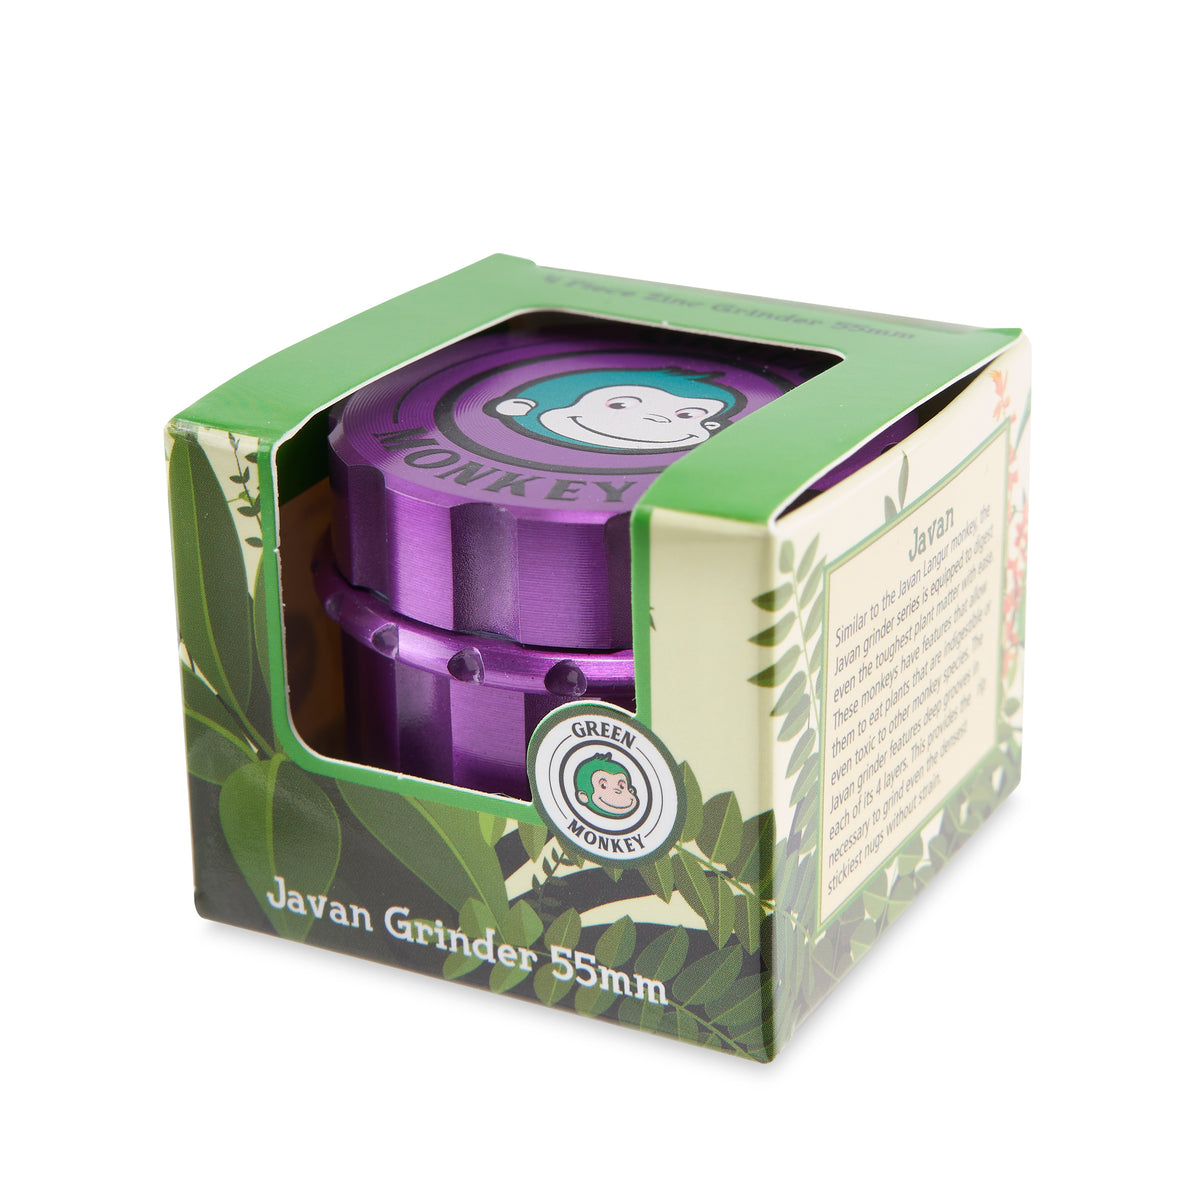 Green Monkey Grinder - Javan - 55mm - Purple